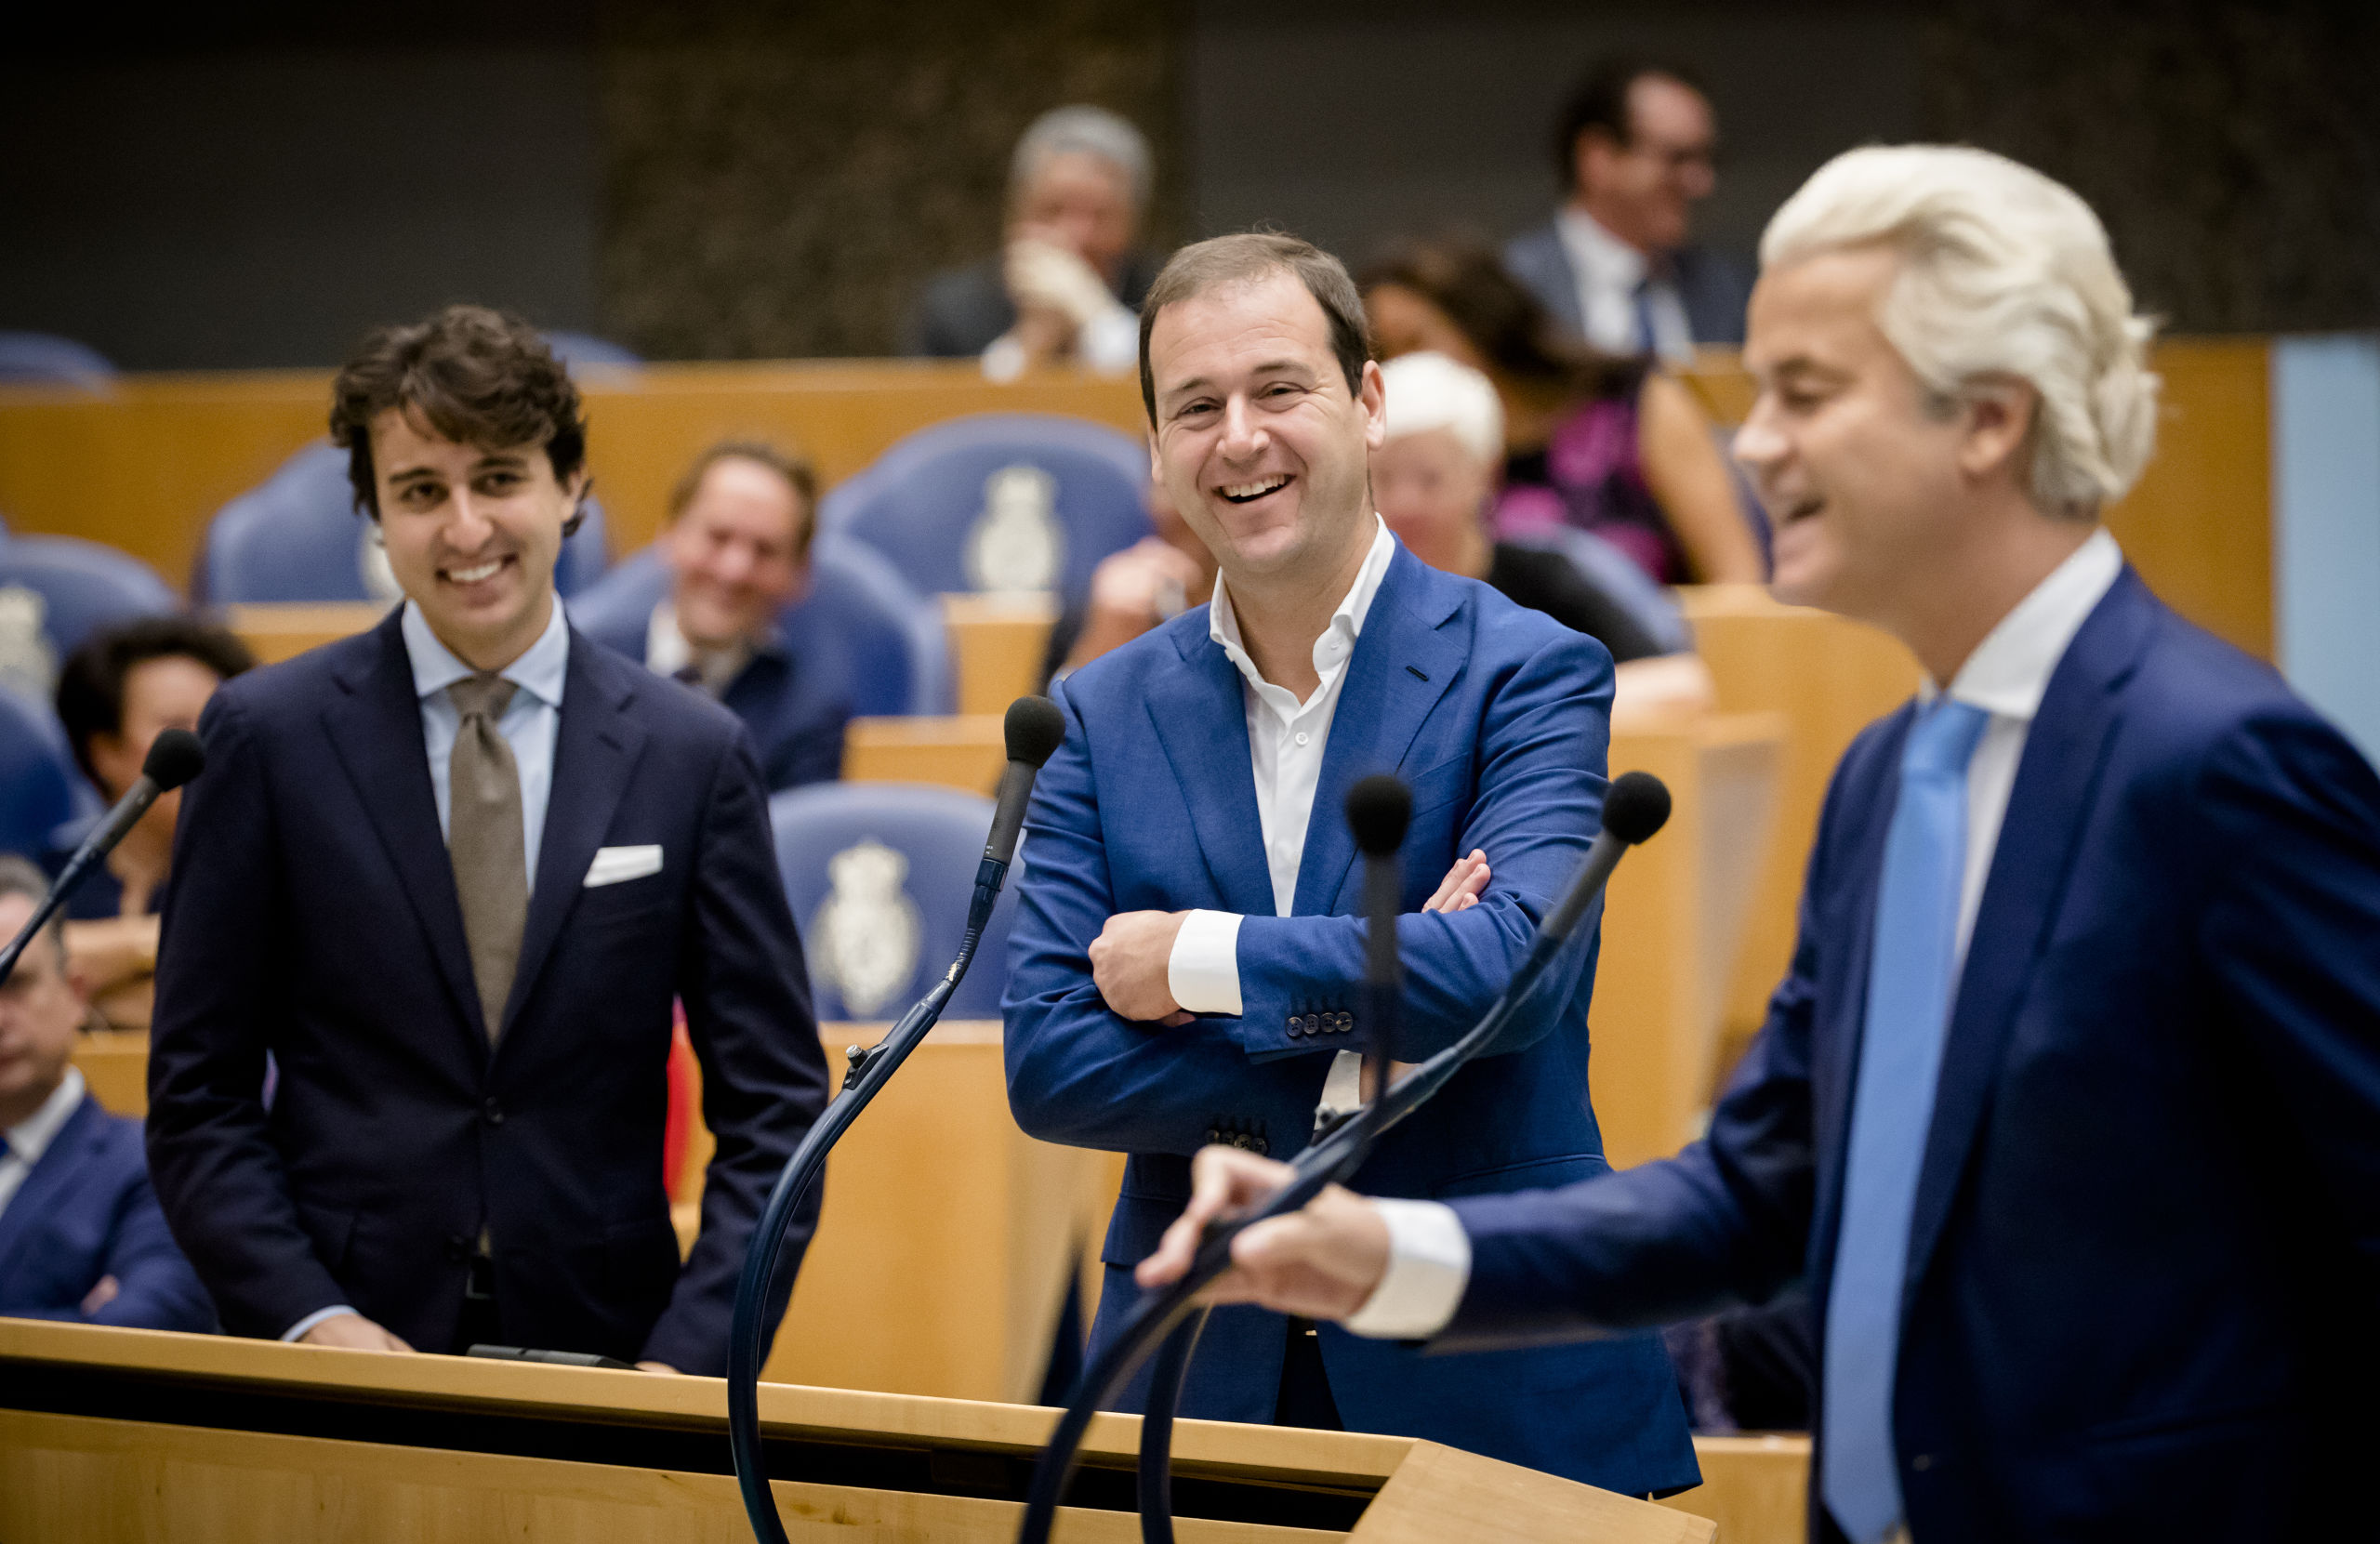 DEN HAAG - Jesse Klaver (Groenlinks), Lodewijk Asscher (PVDA) en PVV-fractievoorzitter Geert Wilders tijdens het Tweede Kamerdebat over het eindverslag van de informatie. ANP BART MAAT